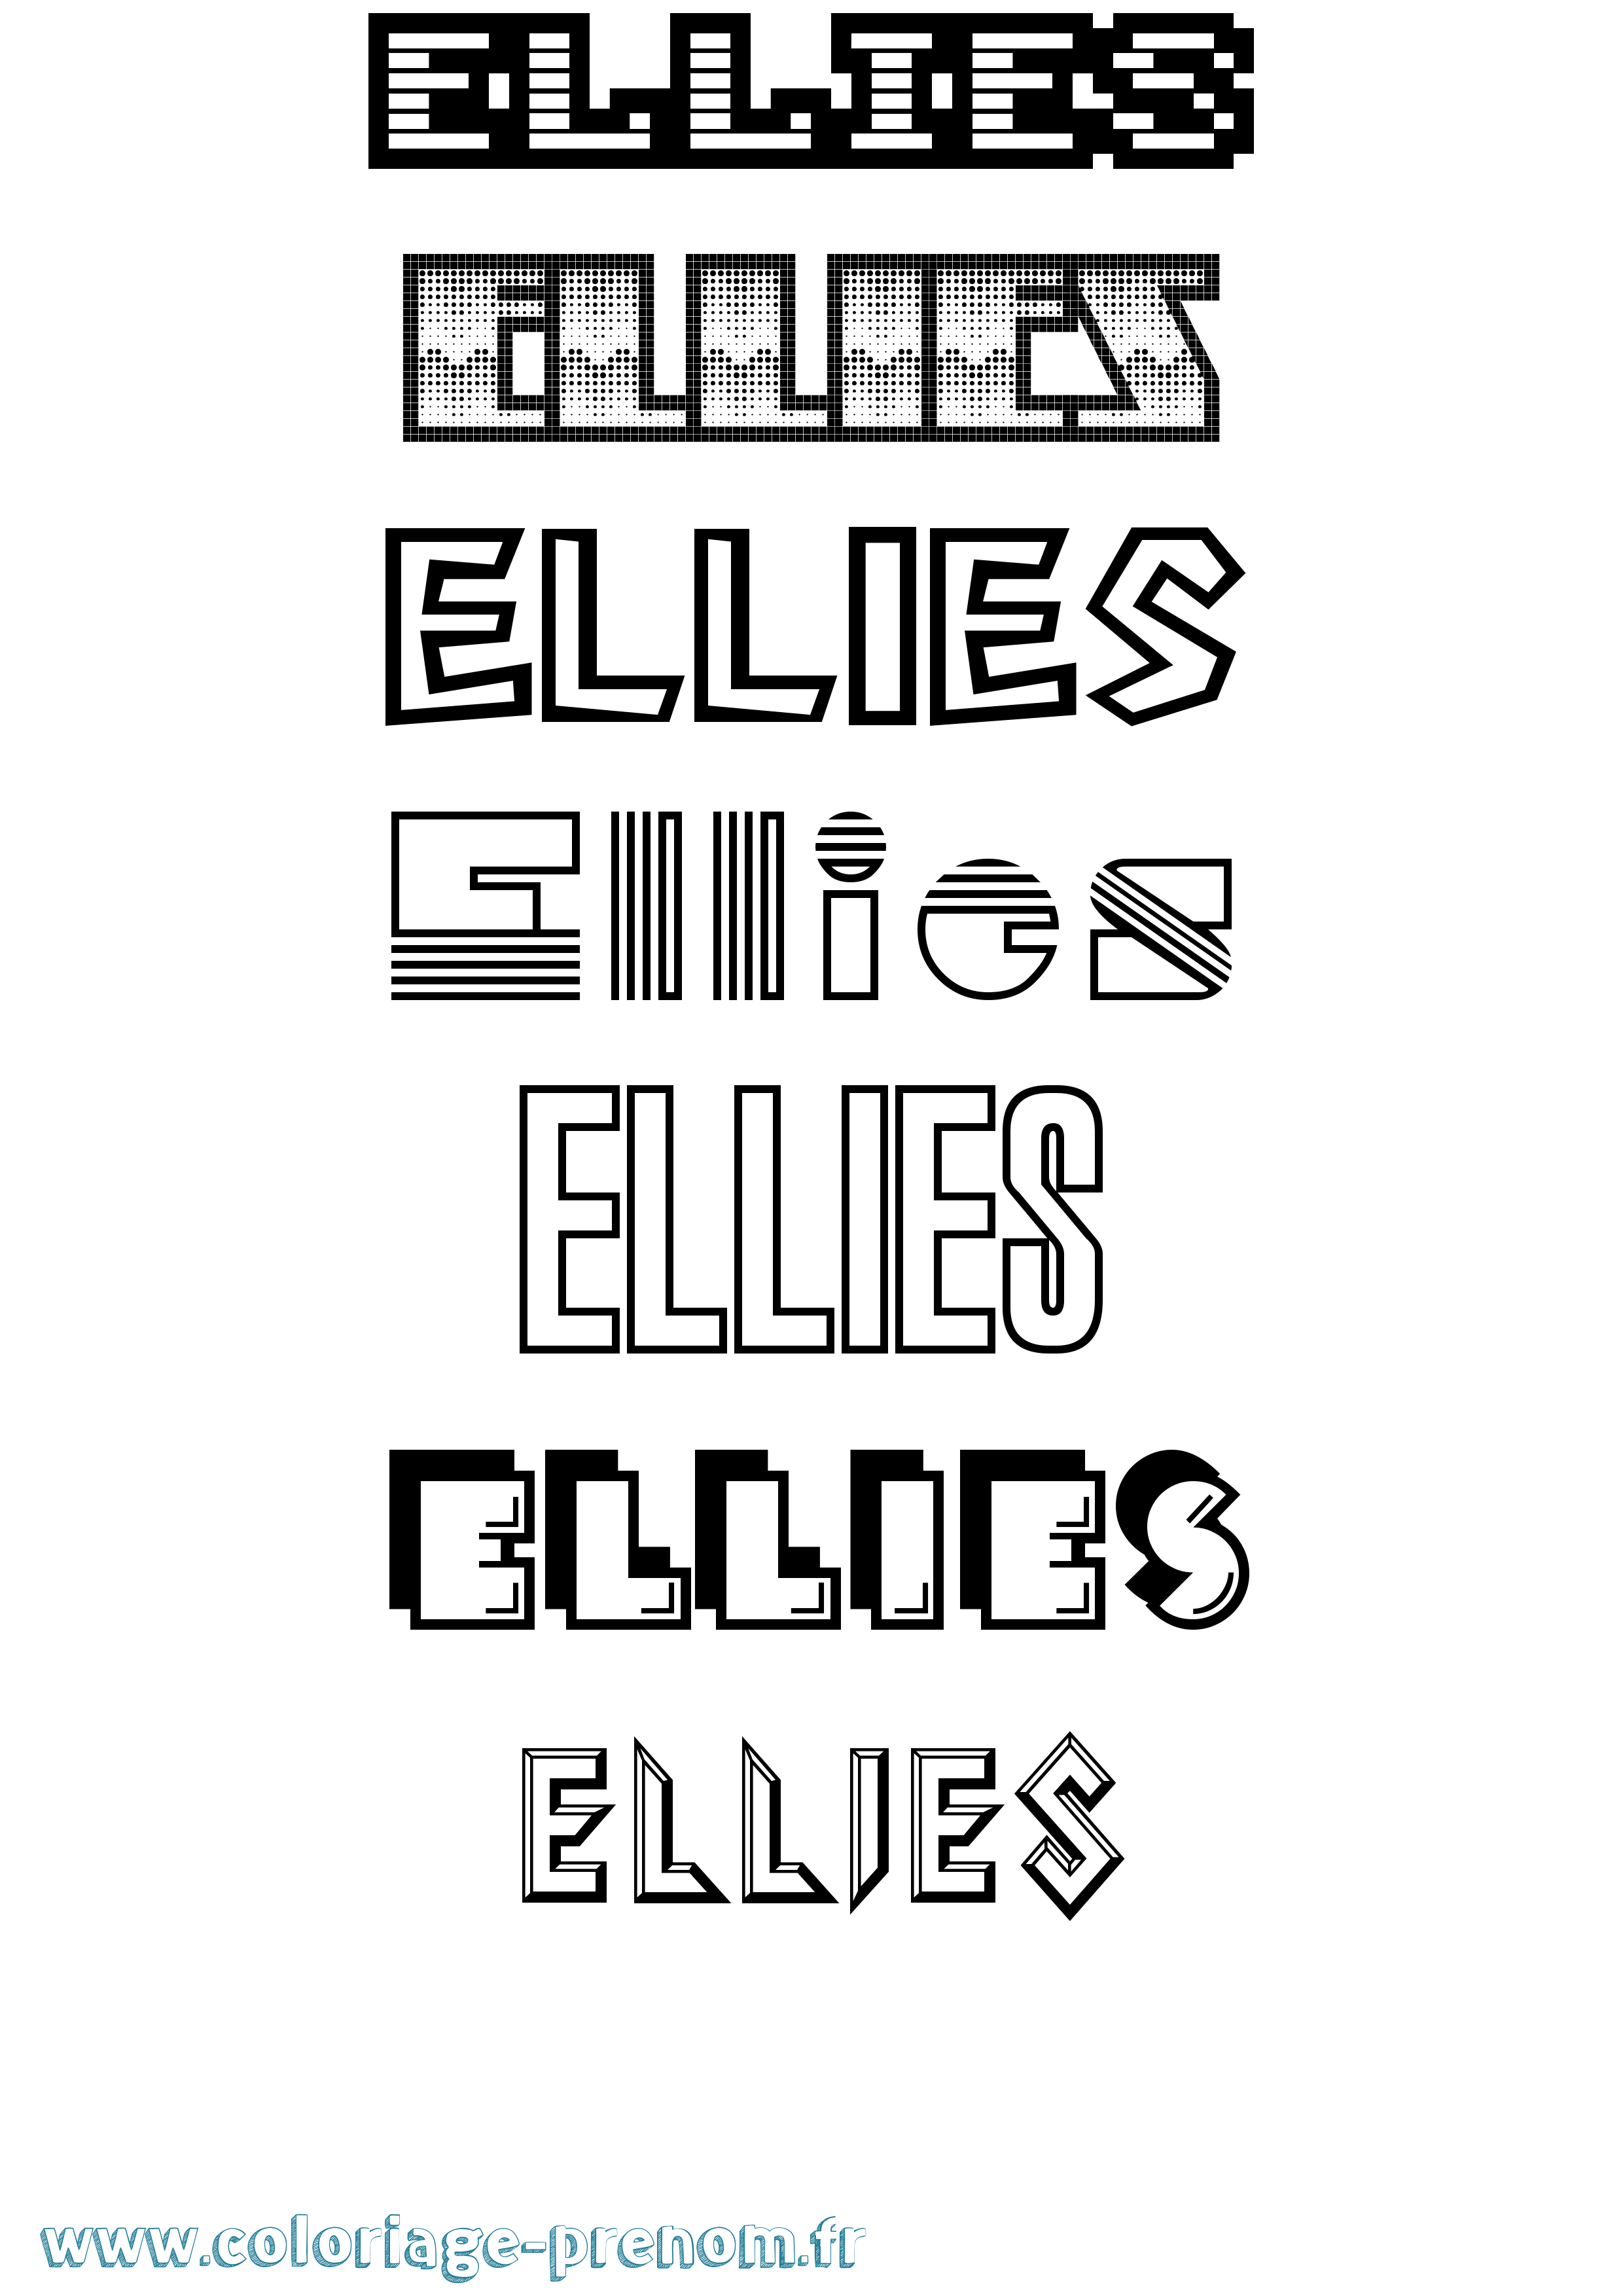 Coloriage prénom Ellies Jeux Vidéos